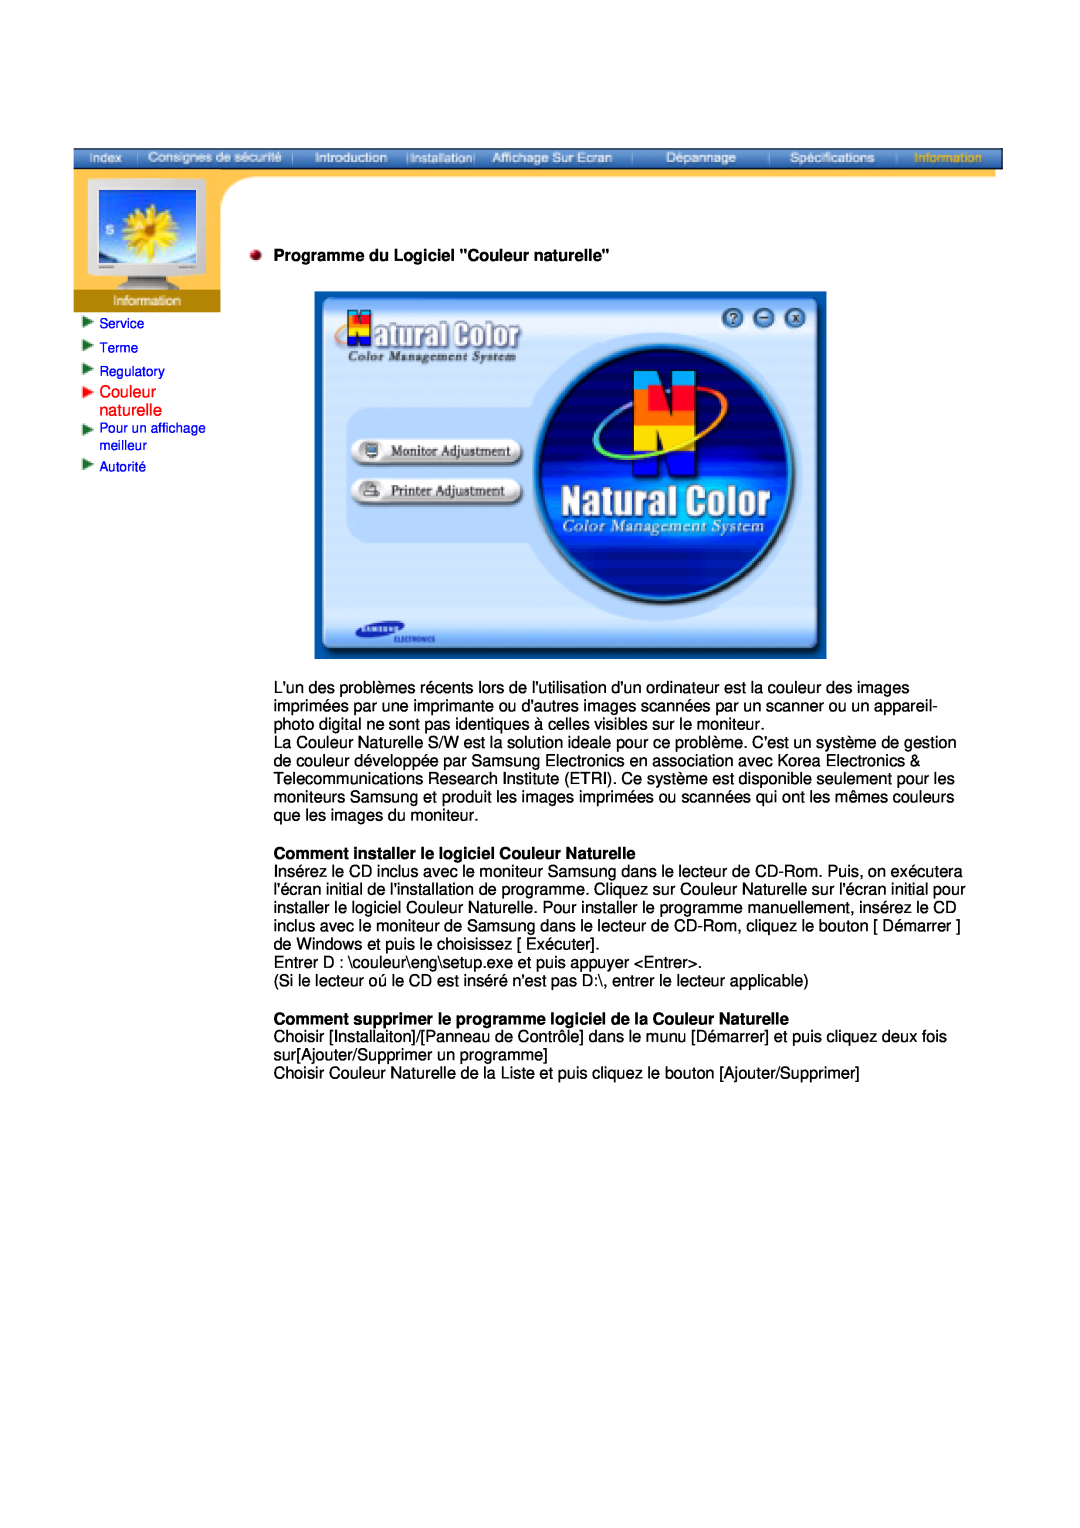 Samsung 153S, V manual Programme du Logiciel Couleur naturelle, Comment installer le logiciel Couleur Naturelle 